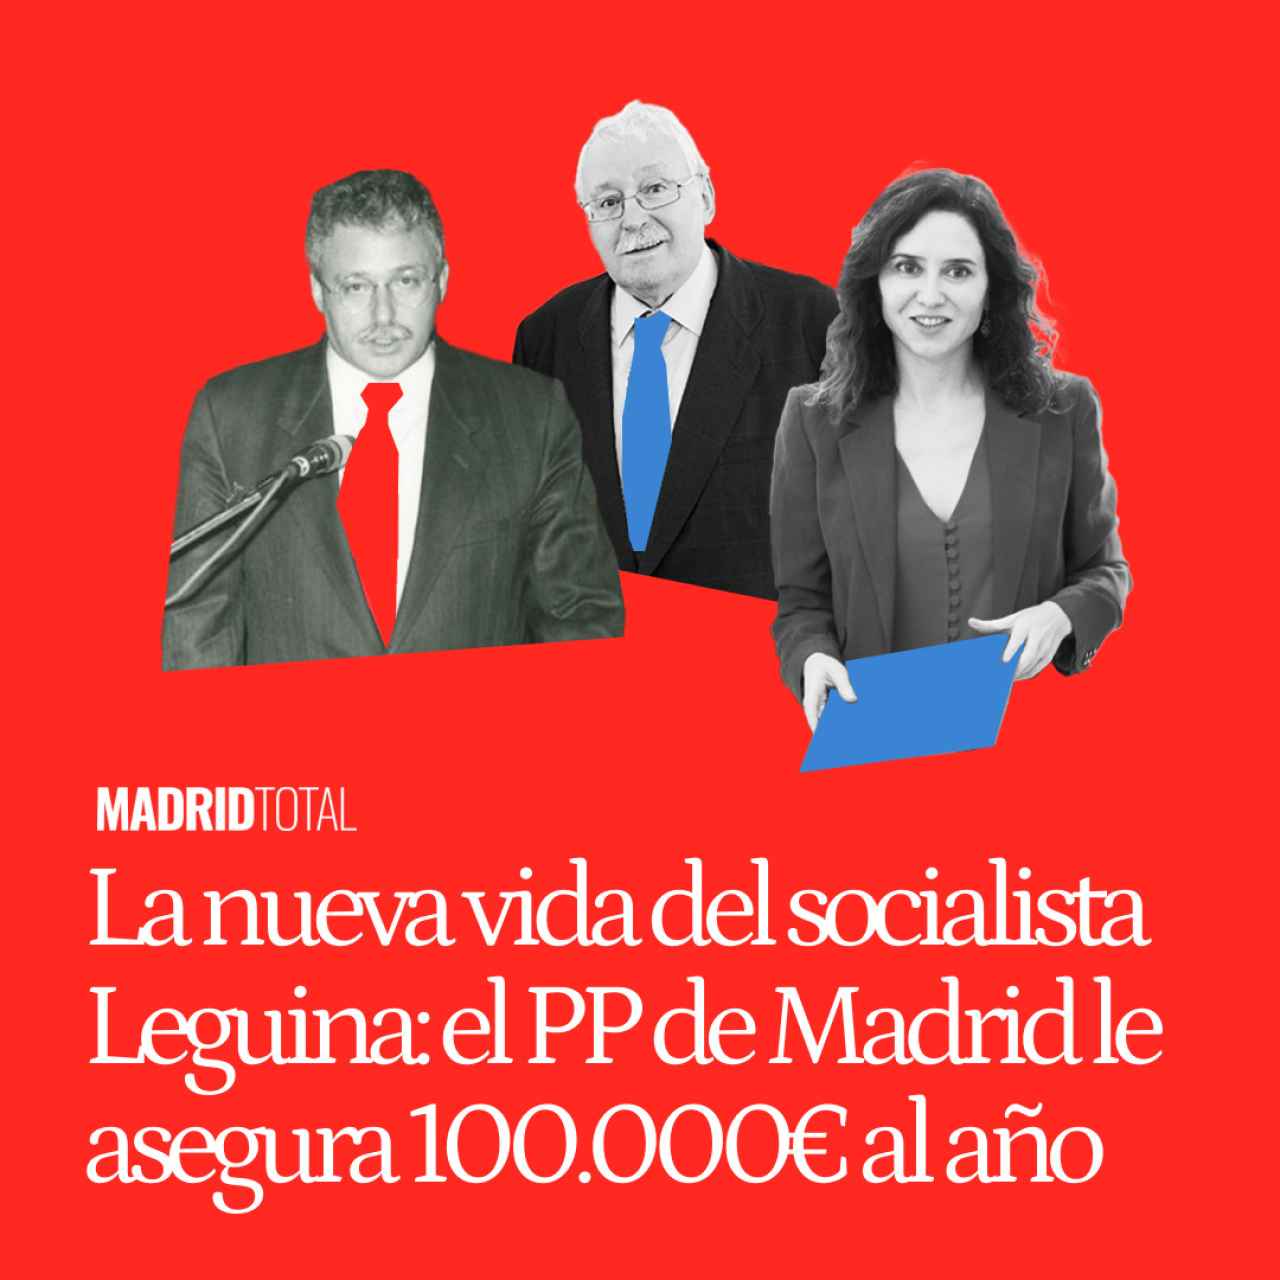 La nueva vida del socialista Leguina: el PP de Madrid le asegura un sueldo de 100.000 € durante 6 años